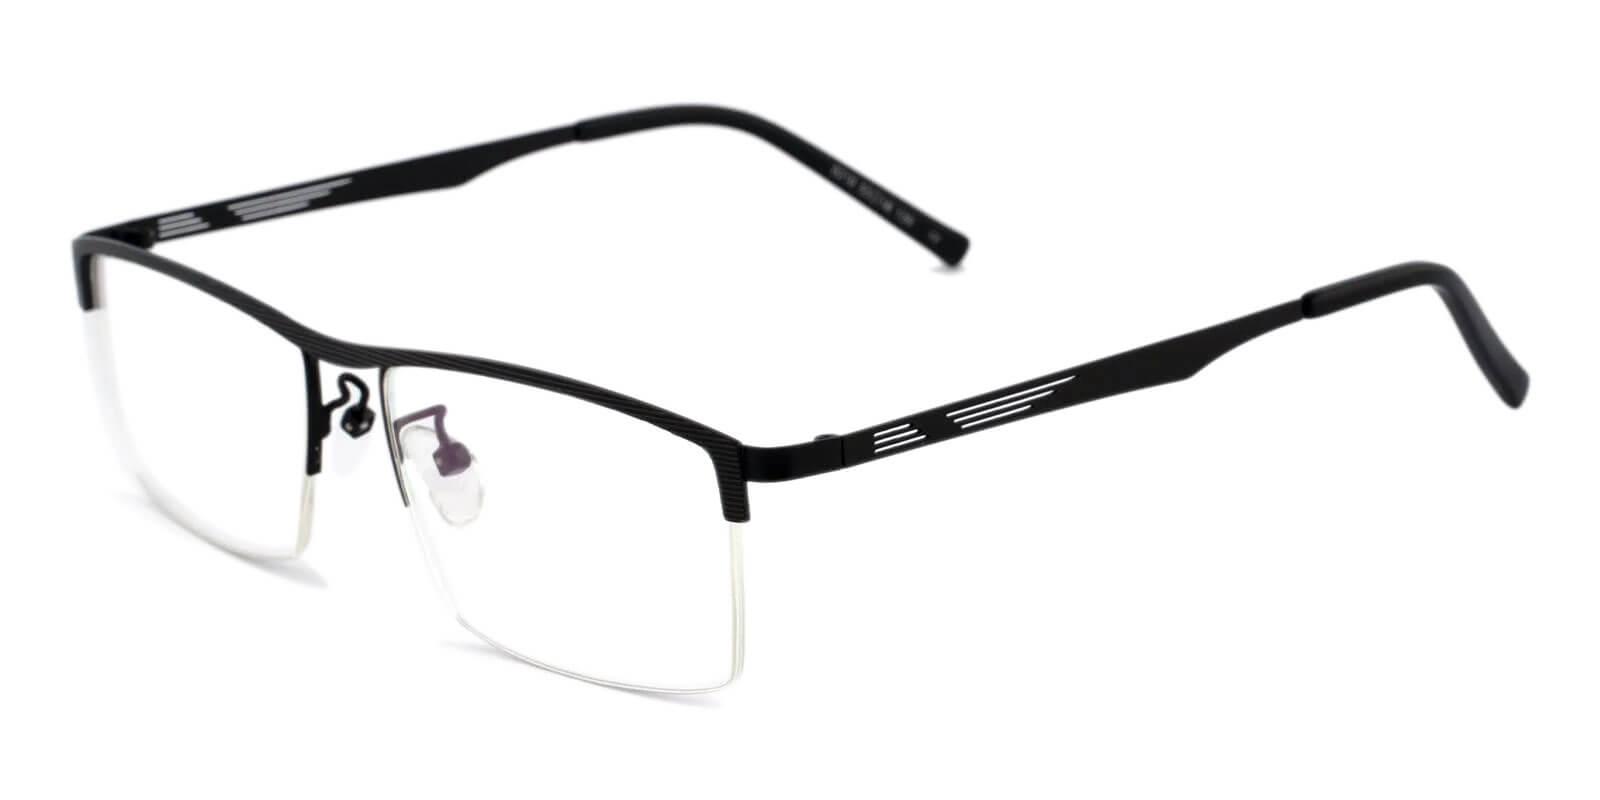 Henry Black Metal Eyeglasses , NosePads Frames from ABBE Glasses